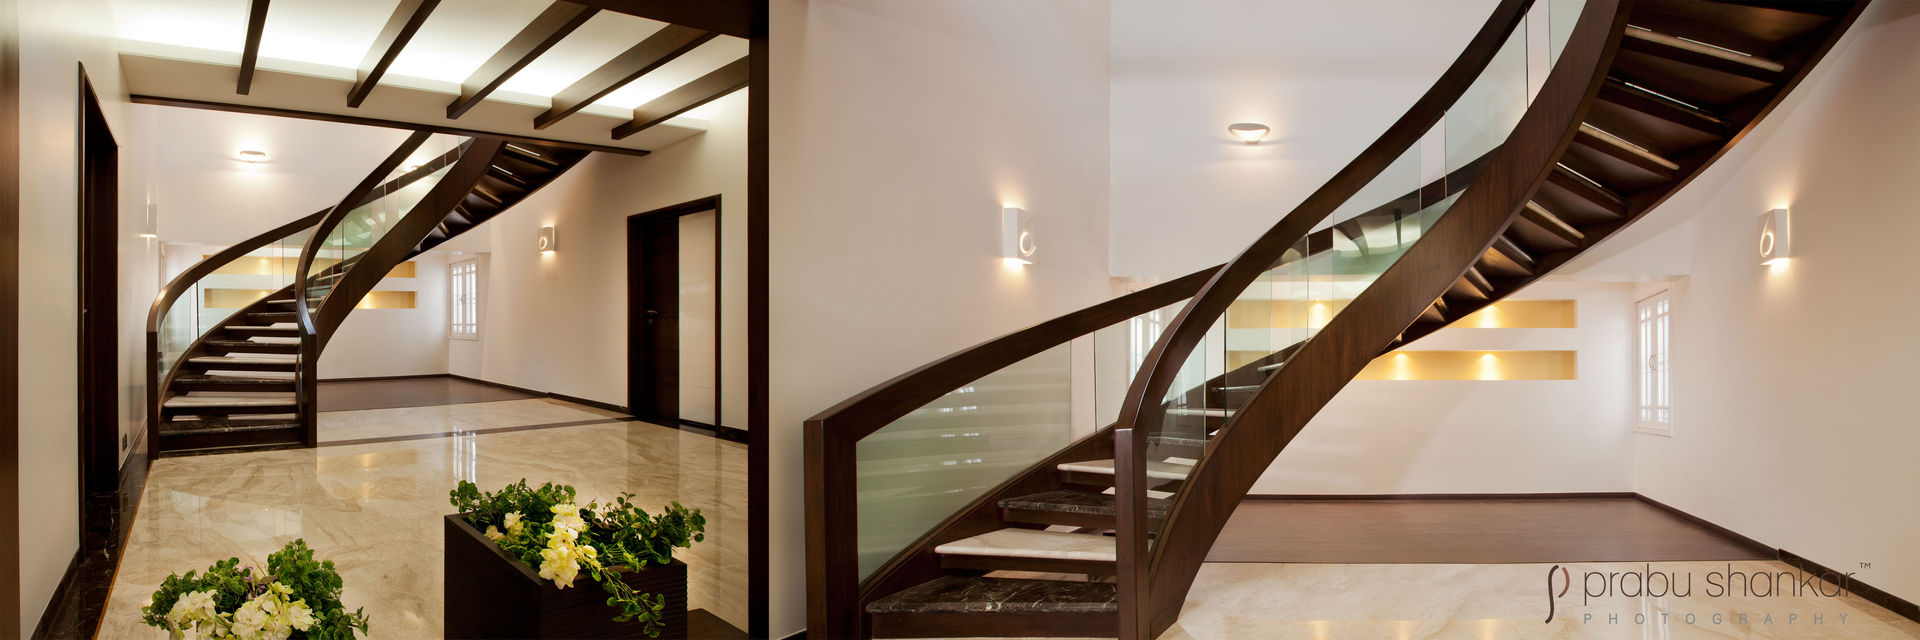 Residential, Prabu Shankar Photography Prabu Shankar Photography Corredores, halls e escadas modernos